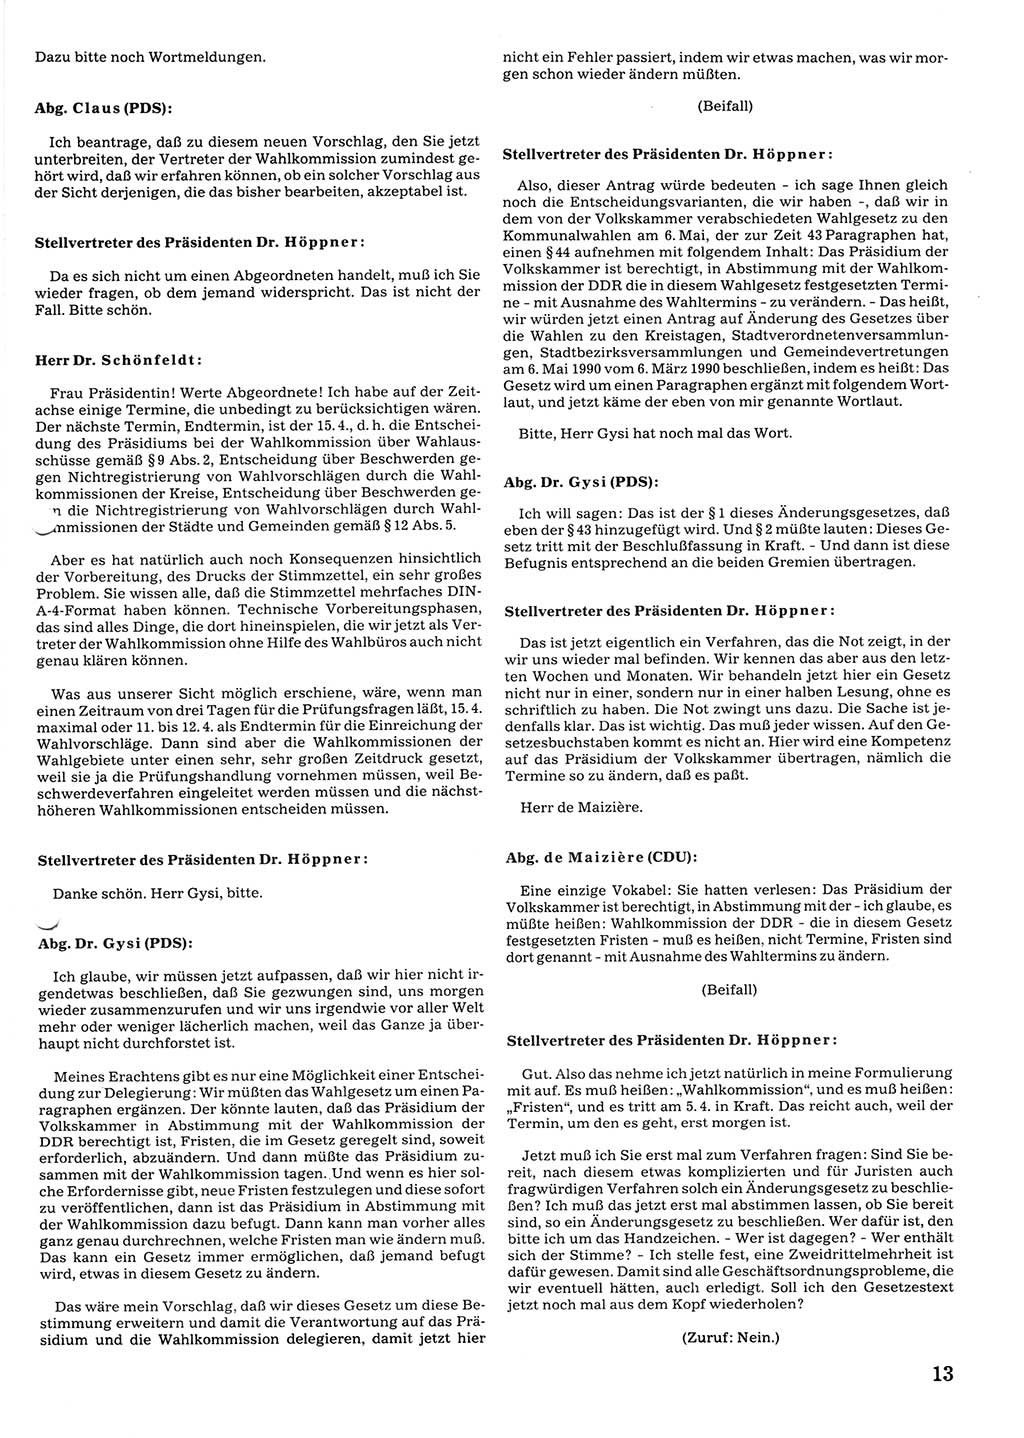 Tagungen der Volkskammer (VK) der Deutschen Demokratischen Republik (DDR), 10. Wahlperiode 1990, Seite 13 (VK. DDR 10. WP. 1990, Prot. Tg. 1-38, 5.4.-2.10.1990, S. 13)